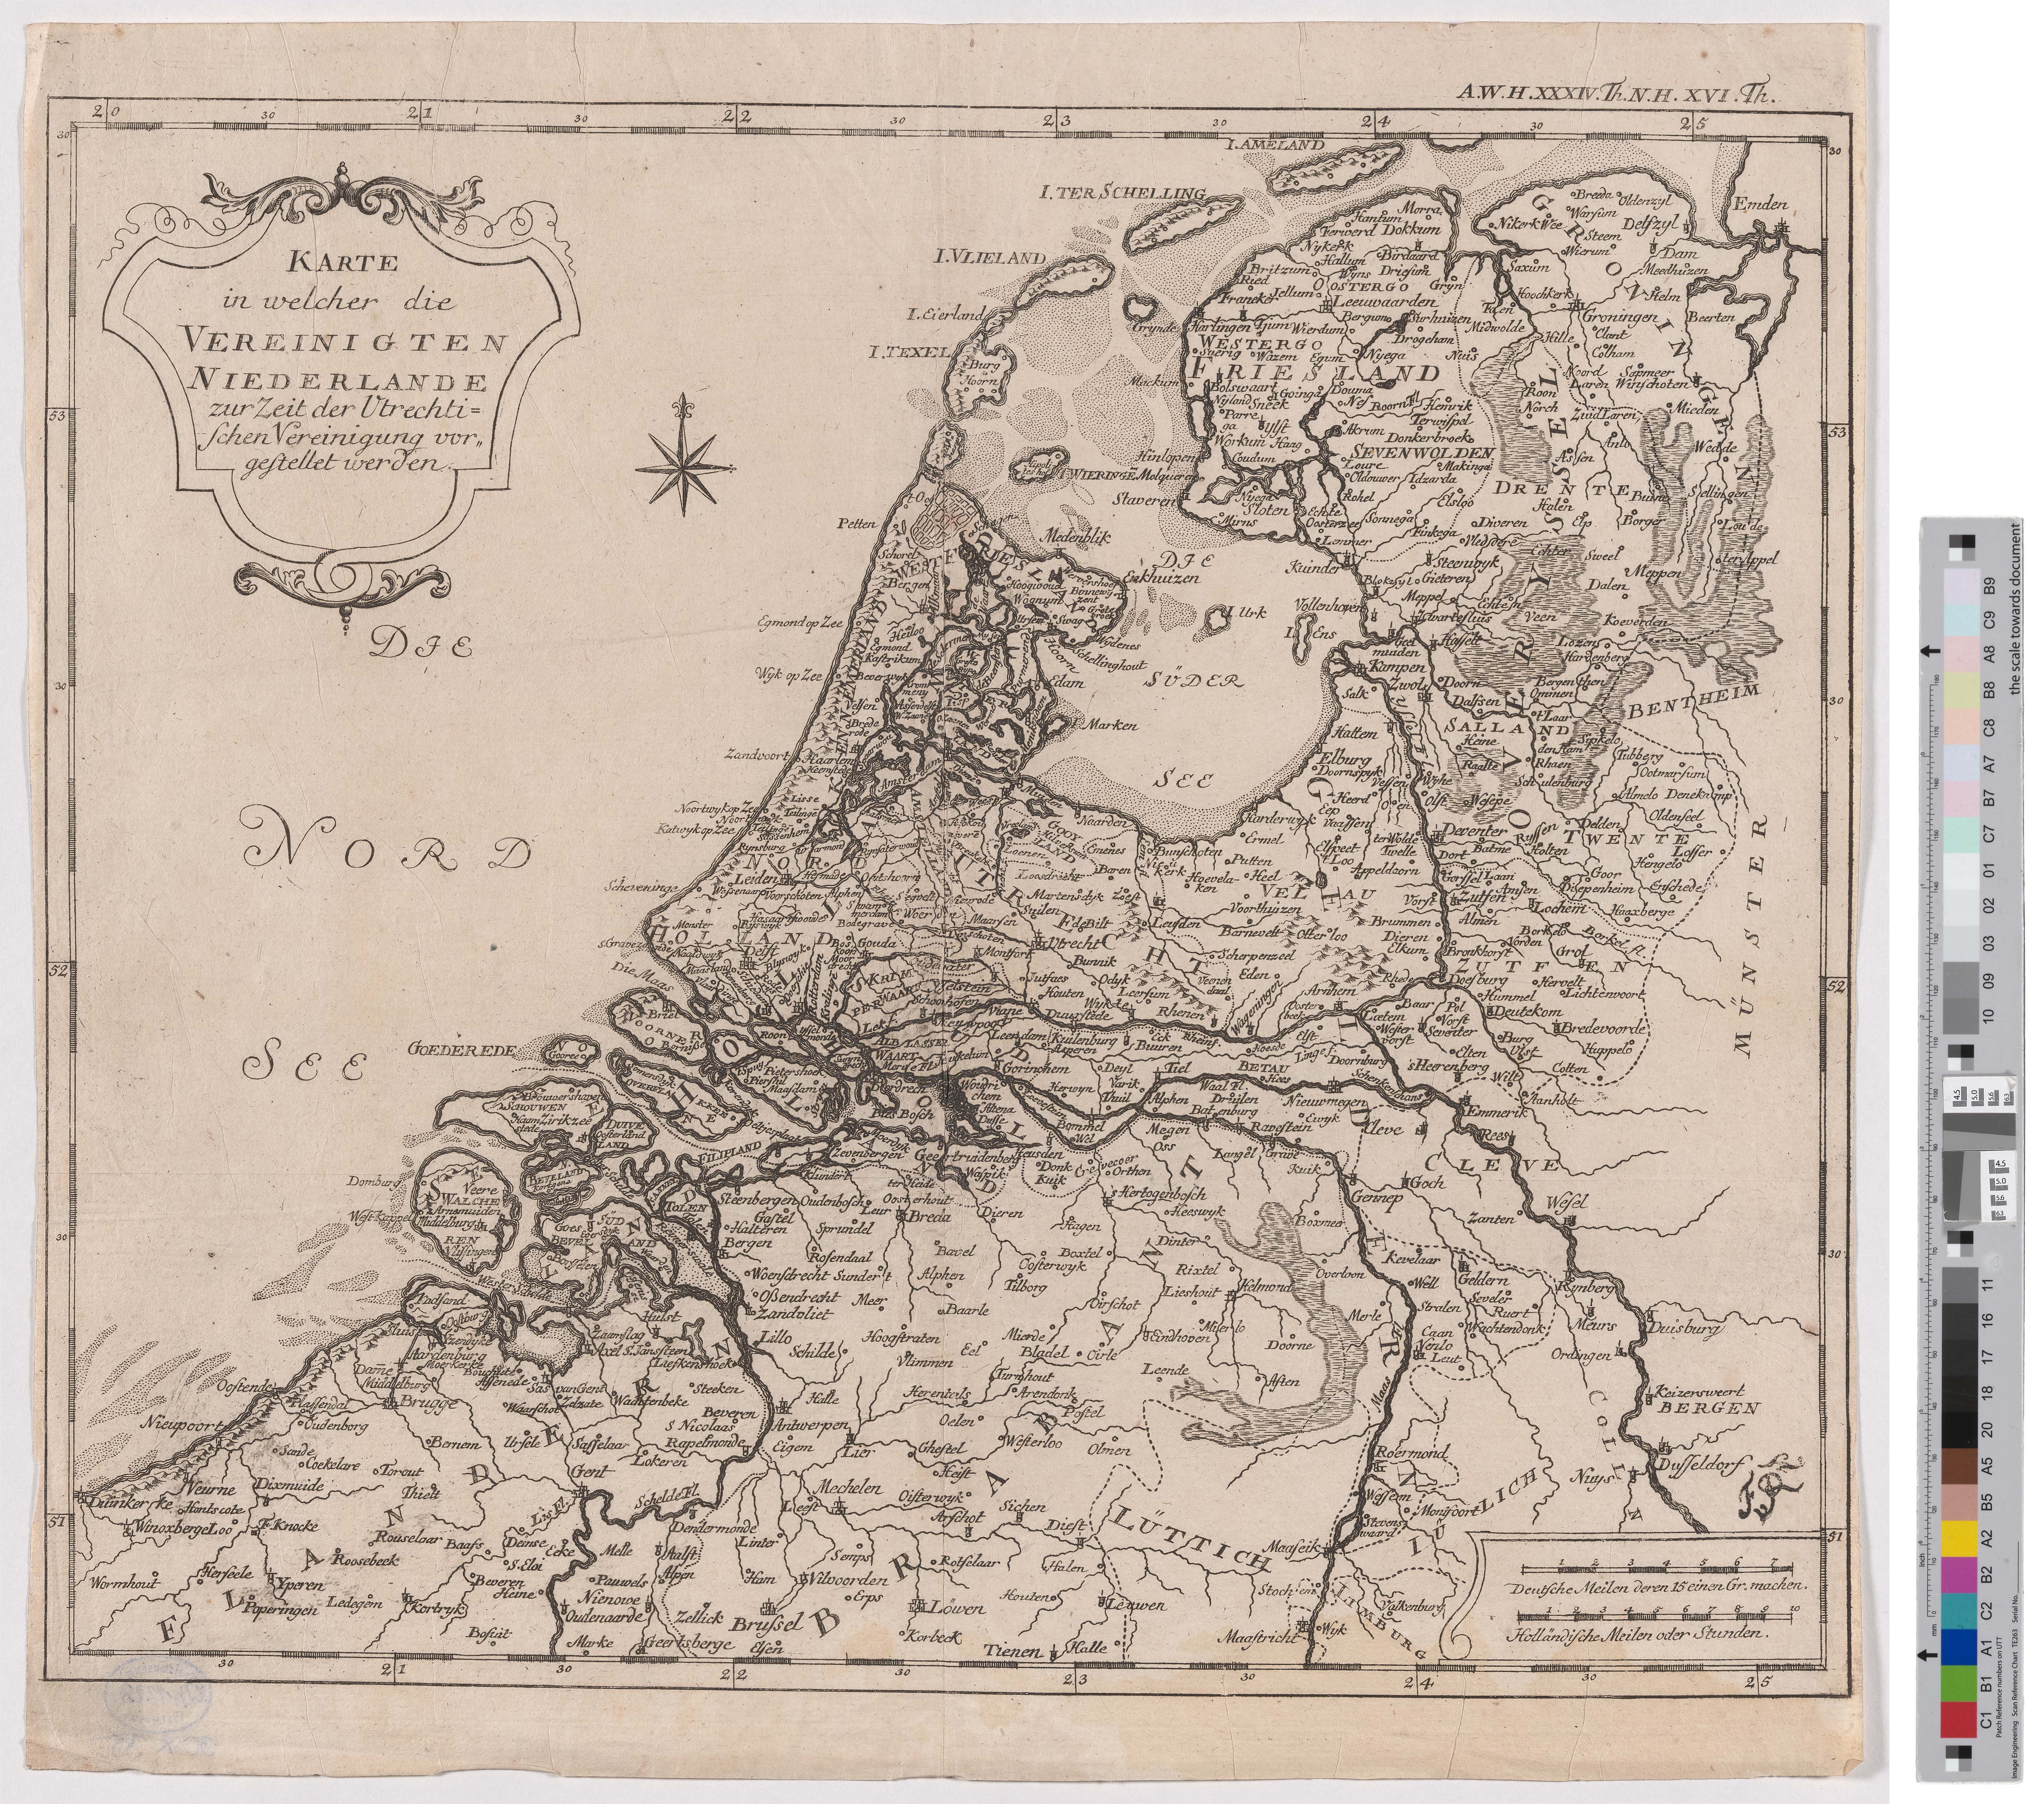 Landkarte "Karte in welcher die Vereinigten Niederlande zur Zeit der Utrechtischen Vereinigung vorgestellt werden" (Kreismuseum Grimma RR-F)